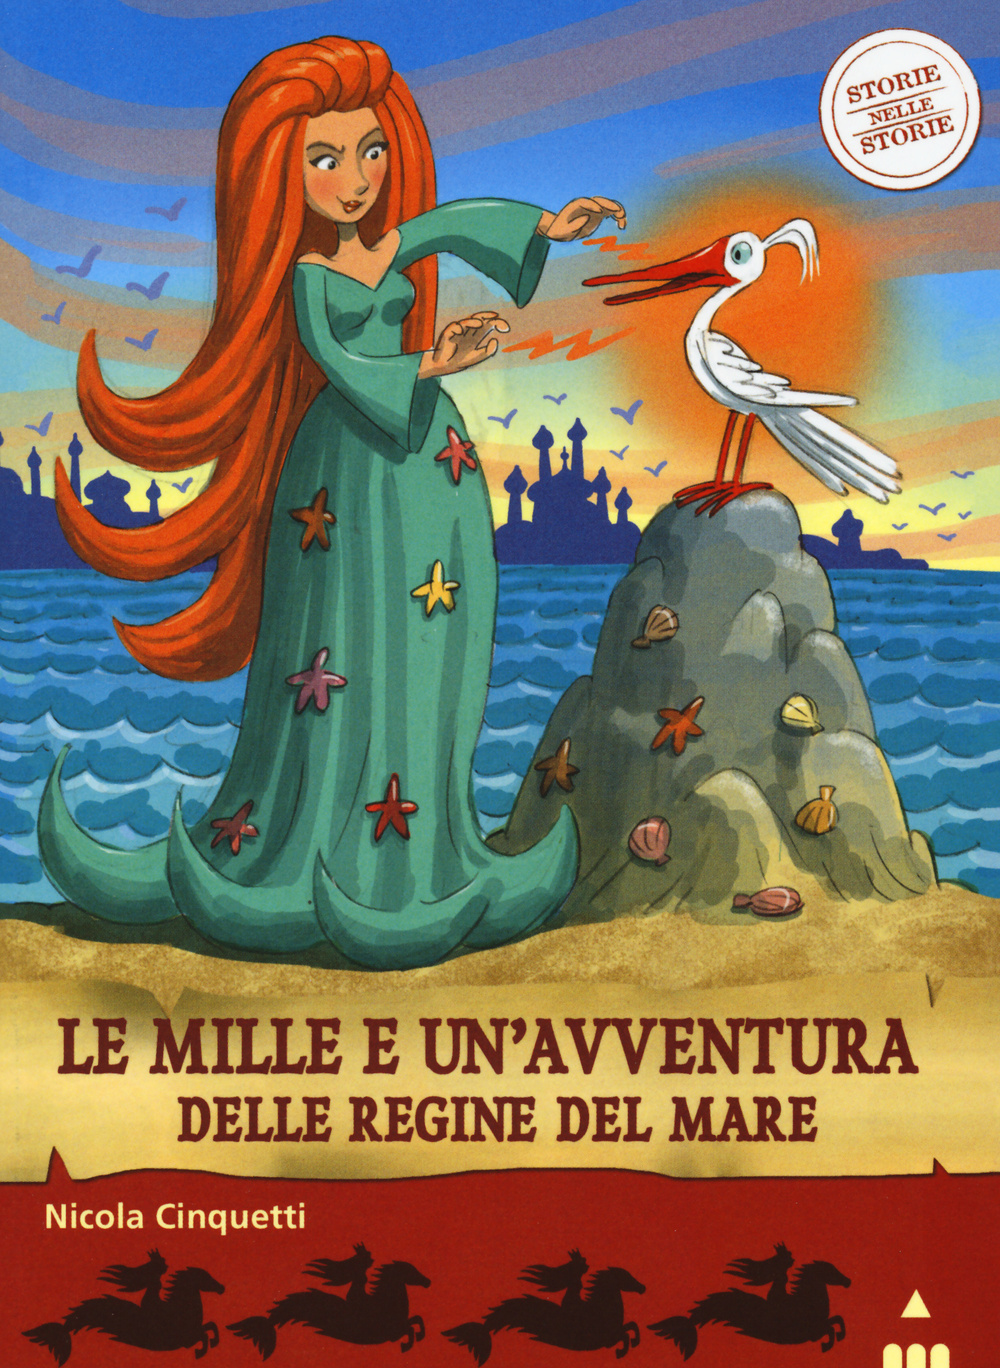 Le mille e una avventura delle regine del mare. Storie nelle storie